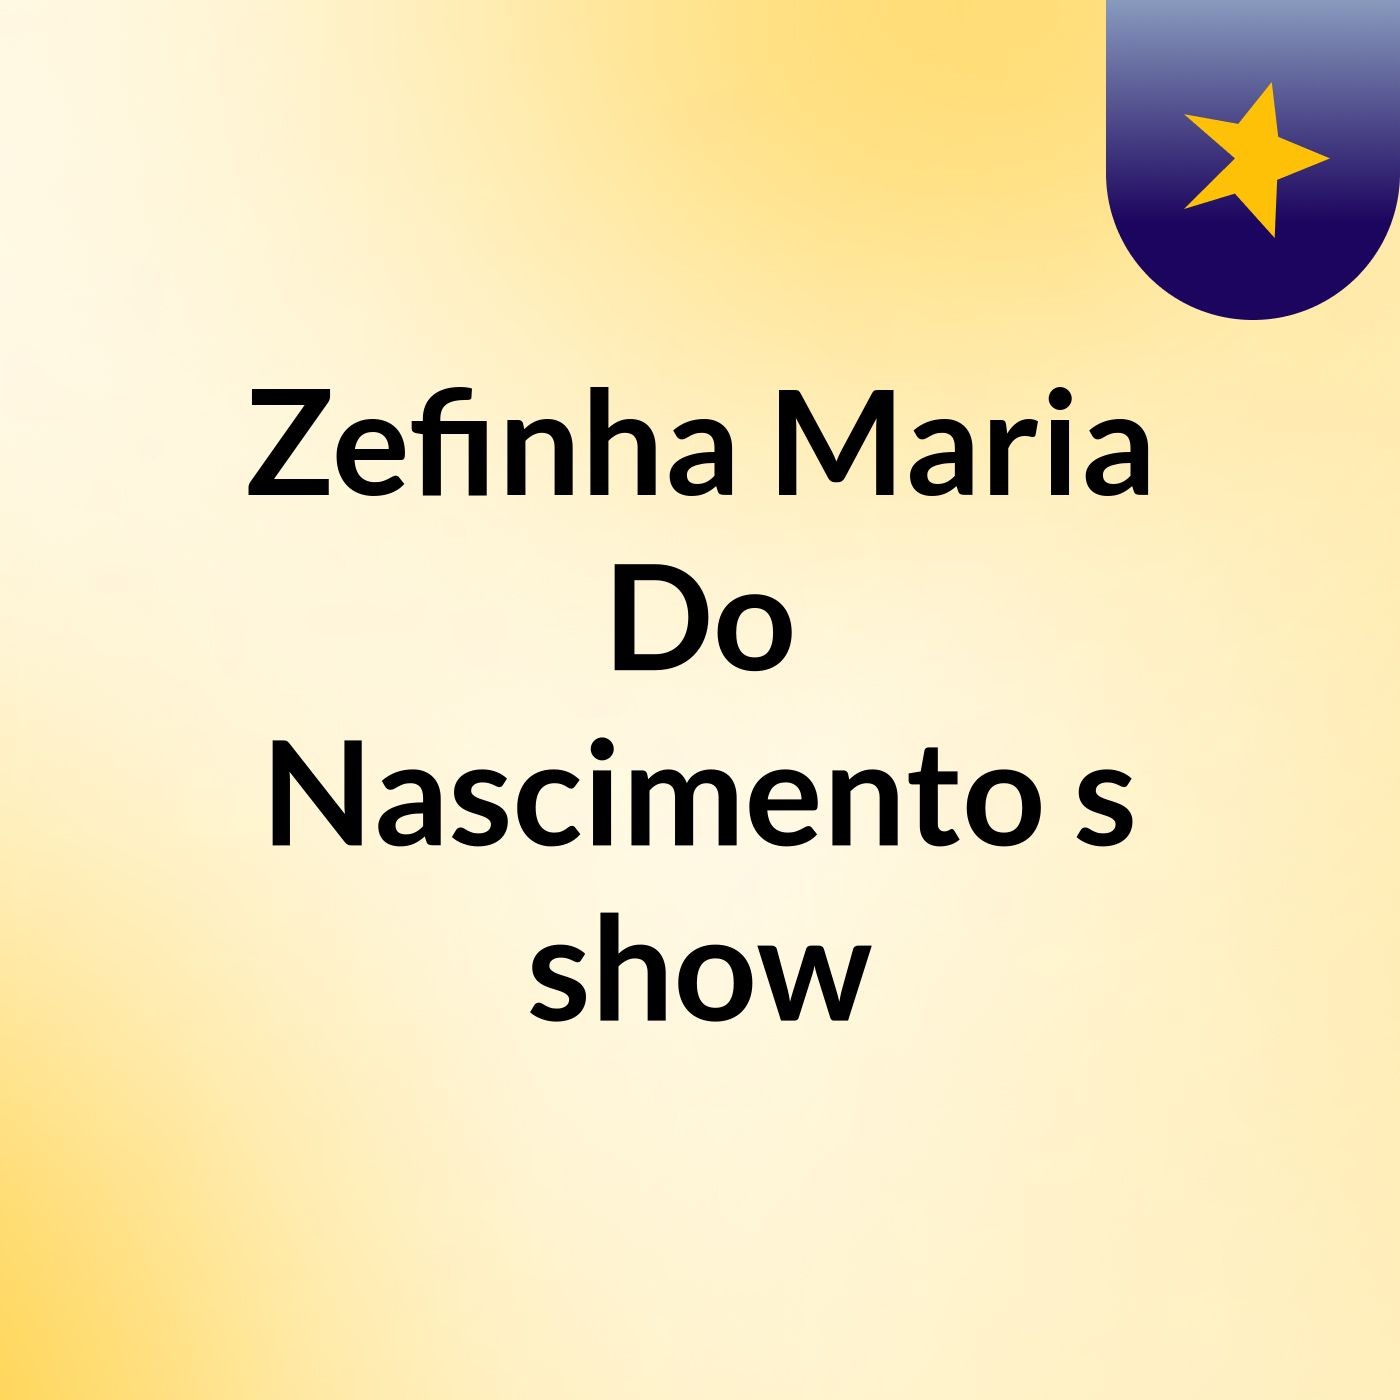 Zefinha Maria Do Nascimento's show